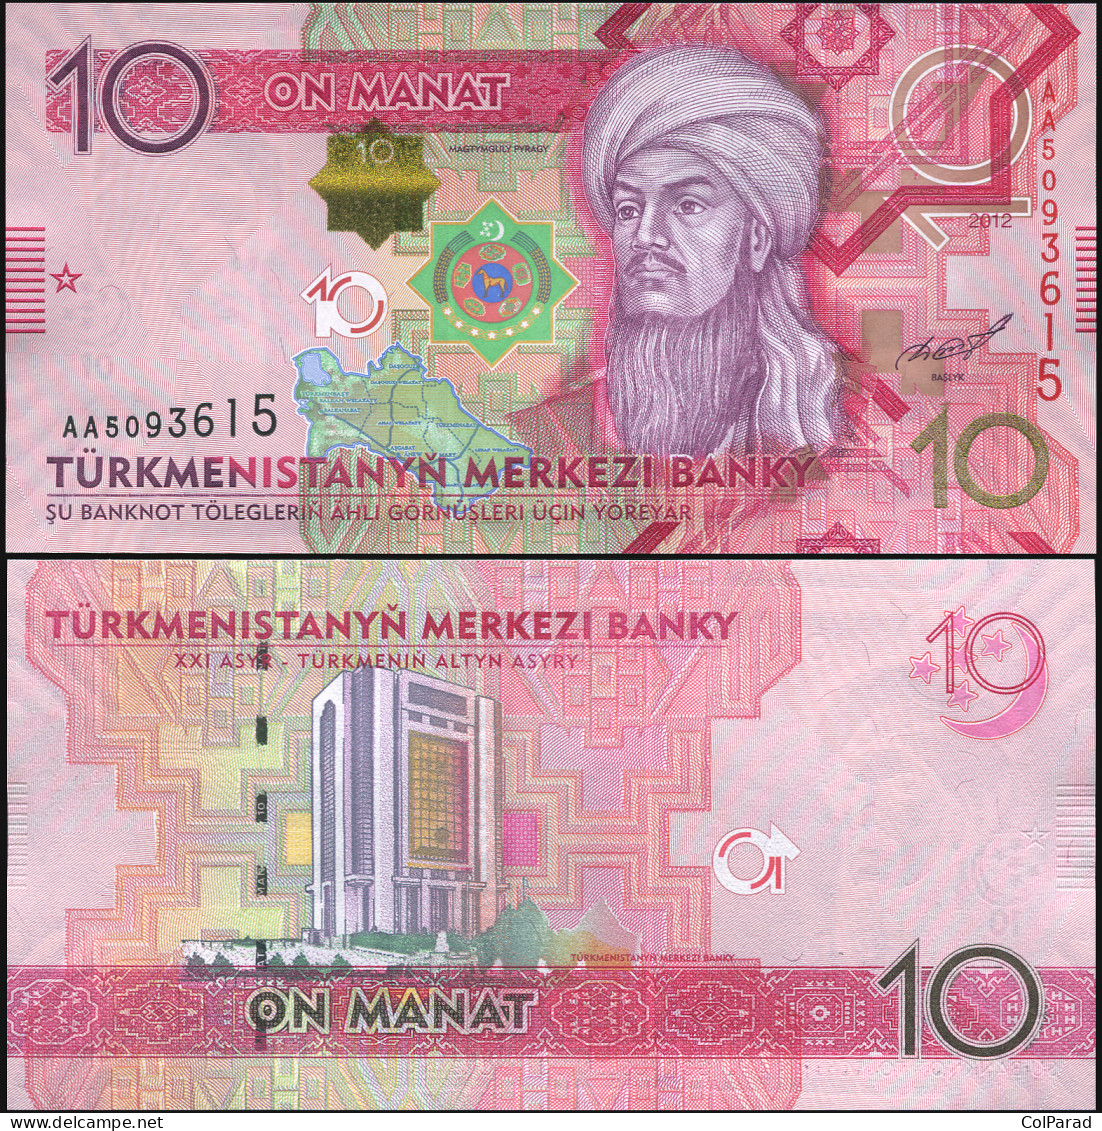 TURKMENISTAN 10 MANAT - 2012 - Unc - P.31a Paper Banknote - Turkmenistan